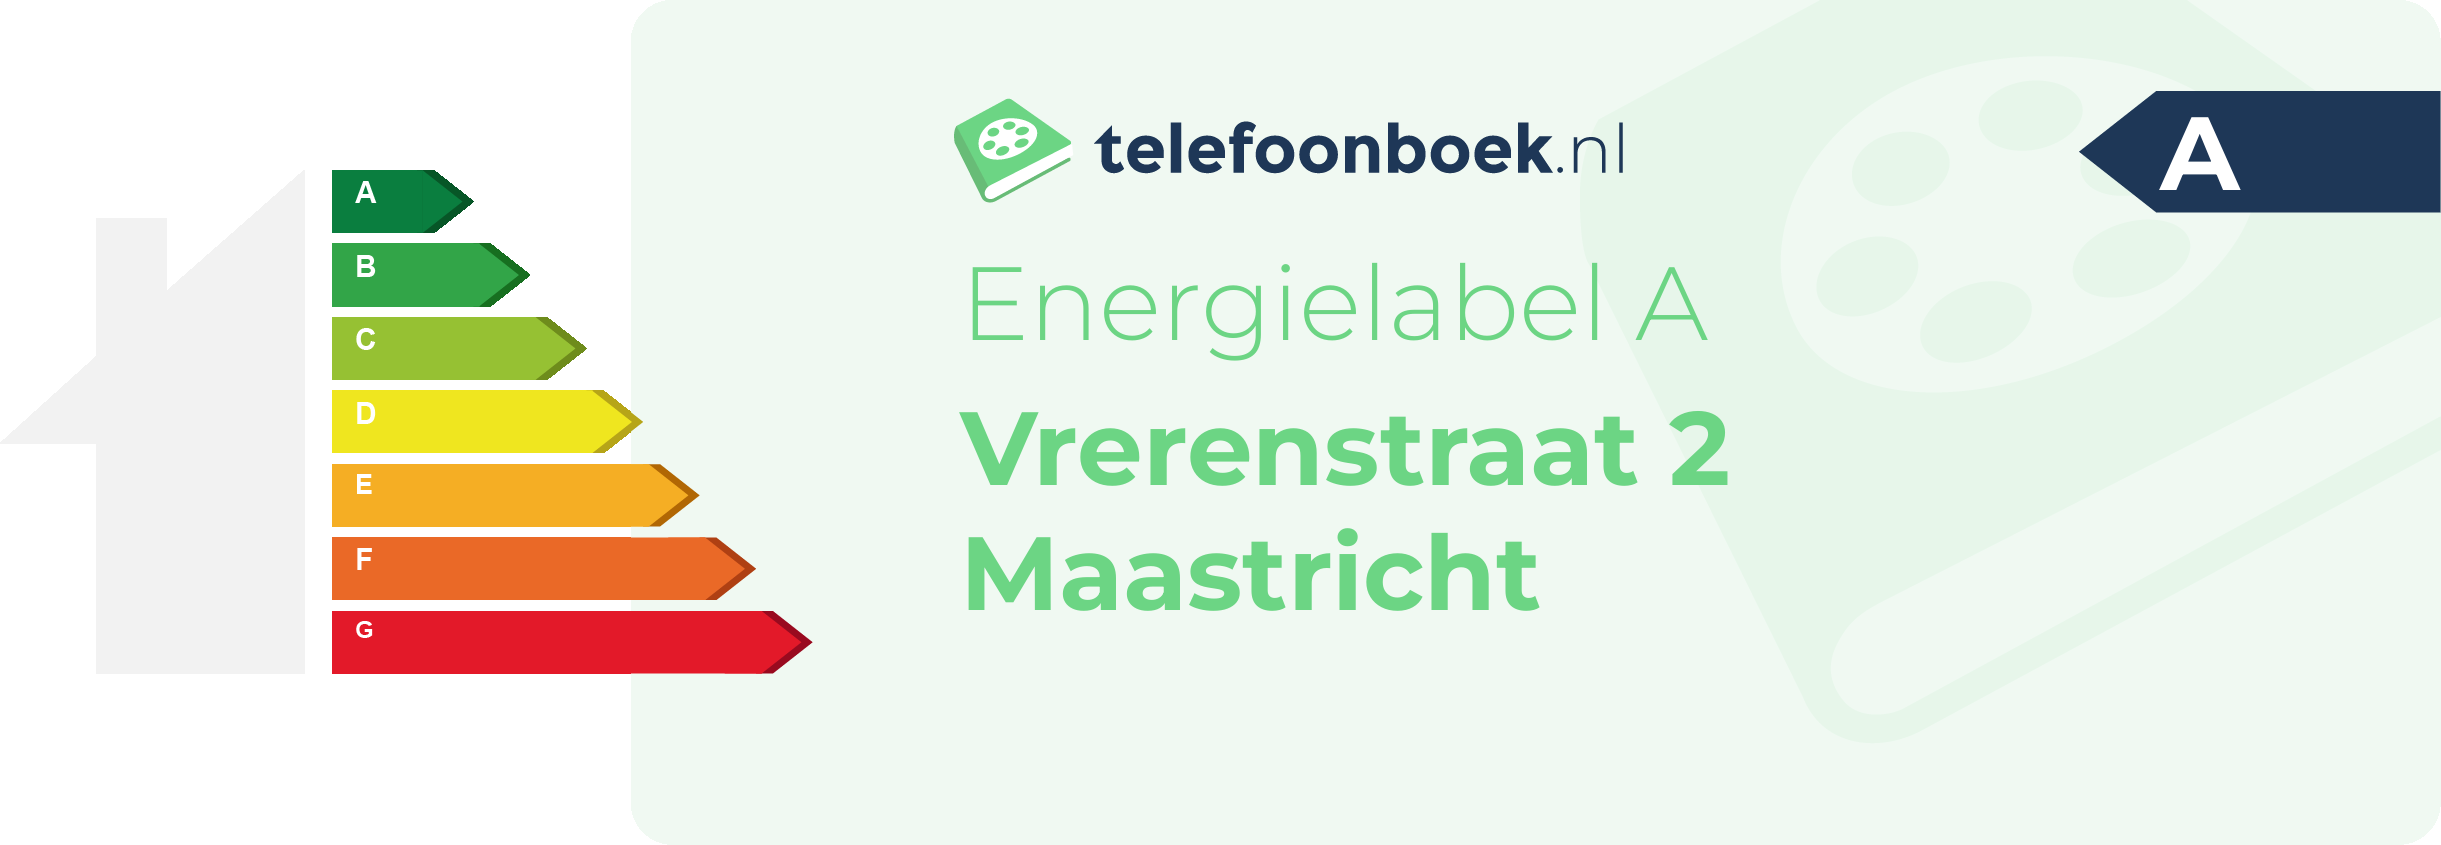 Energielabel Vrerenstraat 2 Maastricht